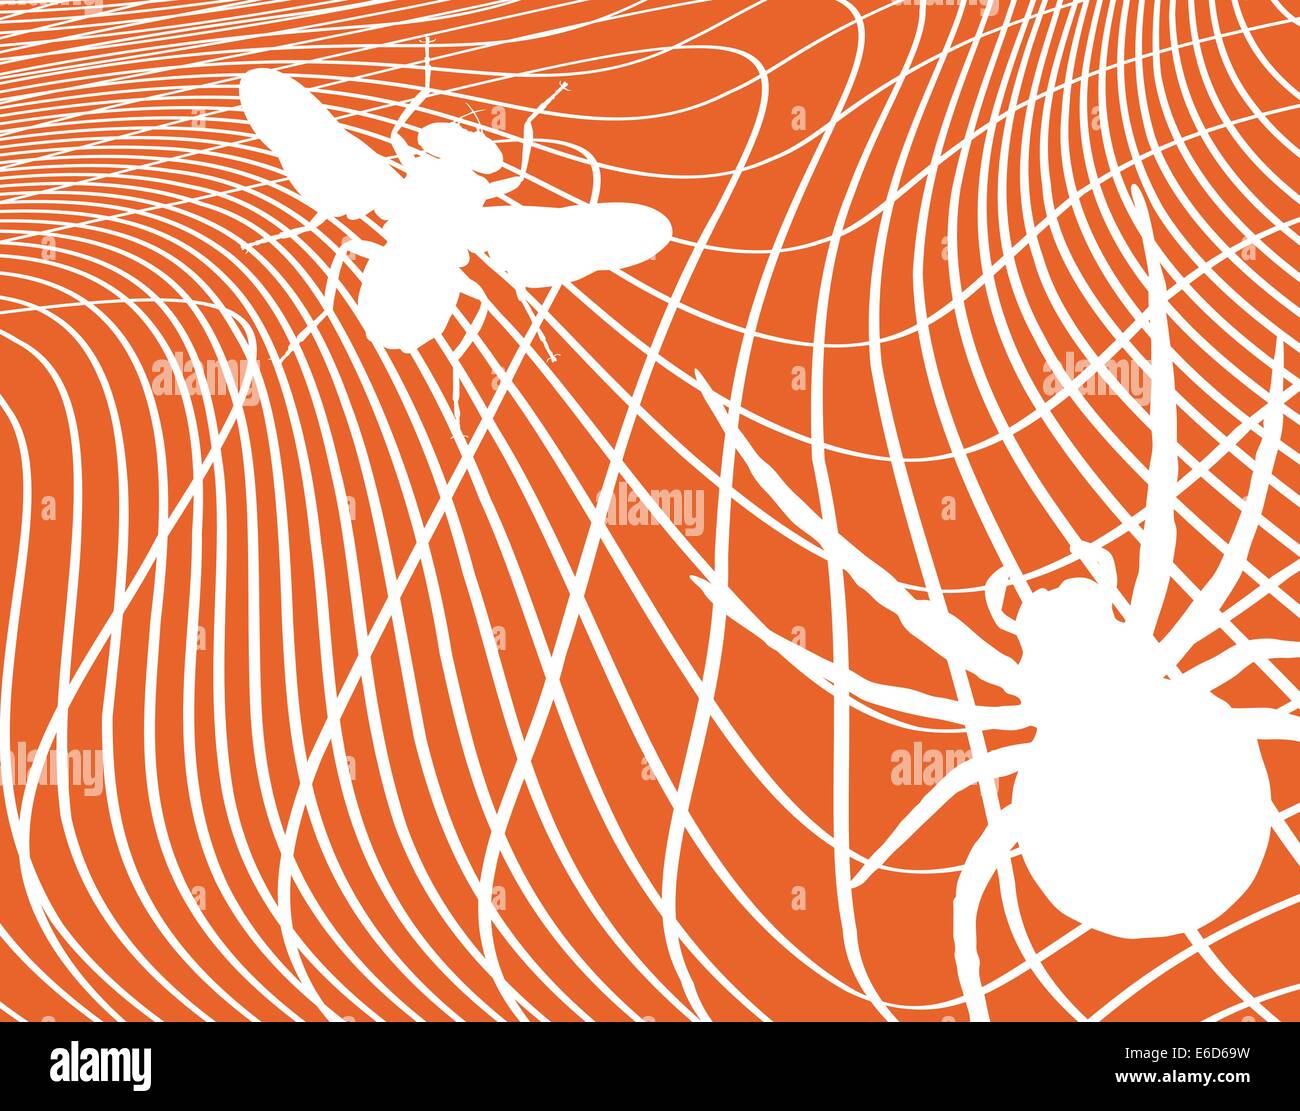 Bearbeitbares Vektor-Illustration einer Fliege in einem Spinnennetz mit jedem Element als separates bewegliche Objekt gefangen Stock Vektor